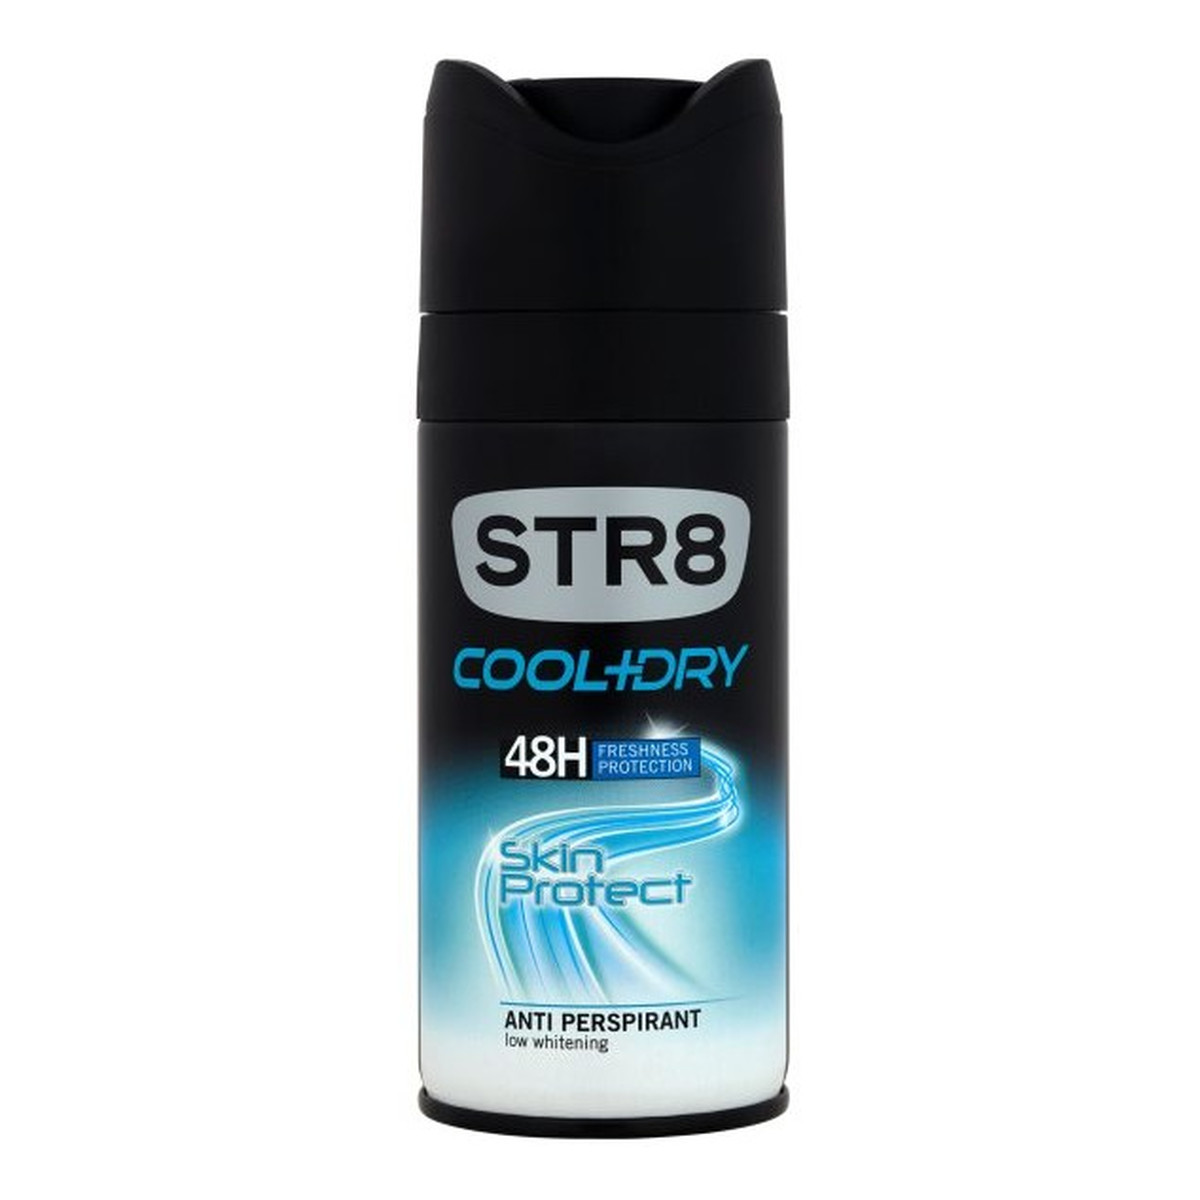 STR8 Cool + Dry Skin Protect Dezodorant 150ml